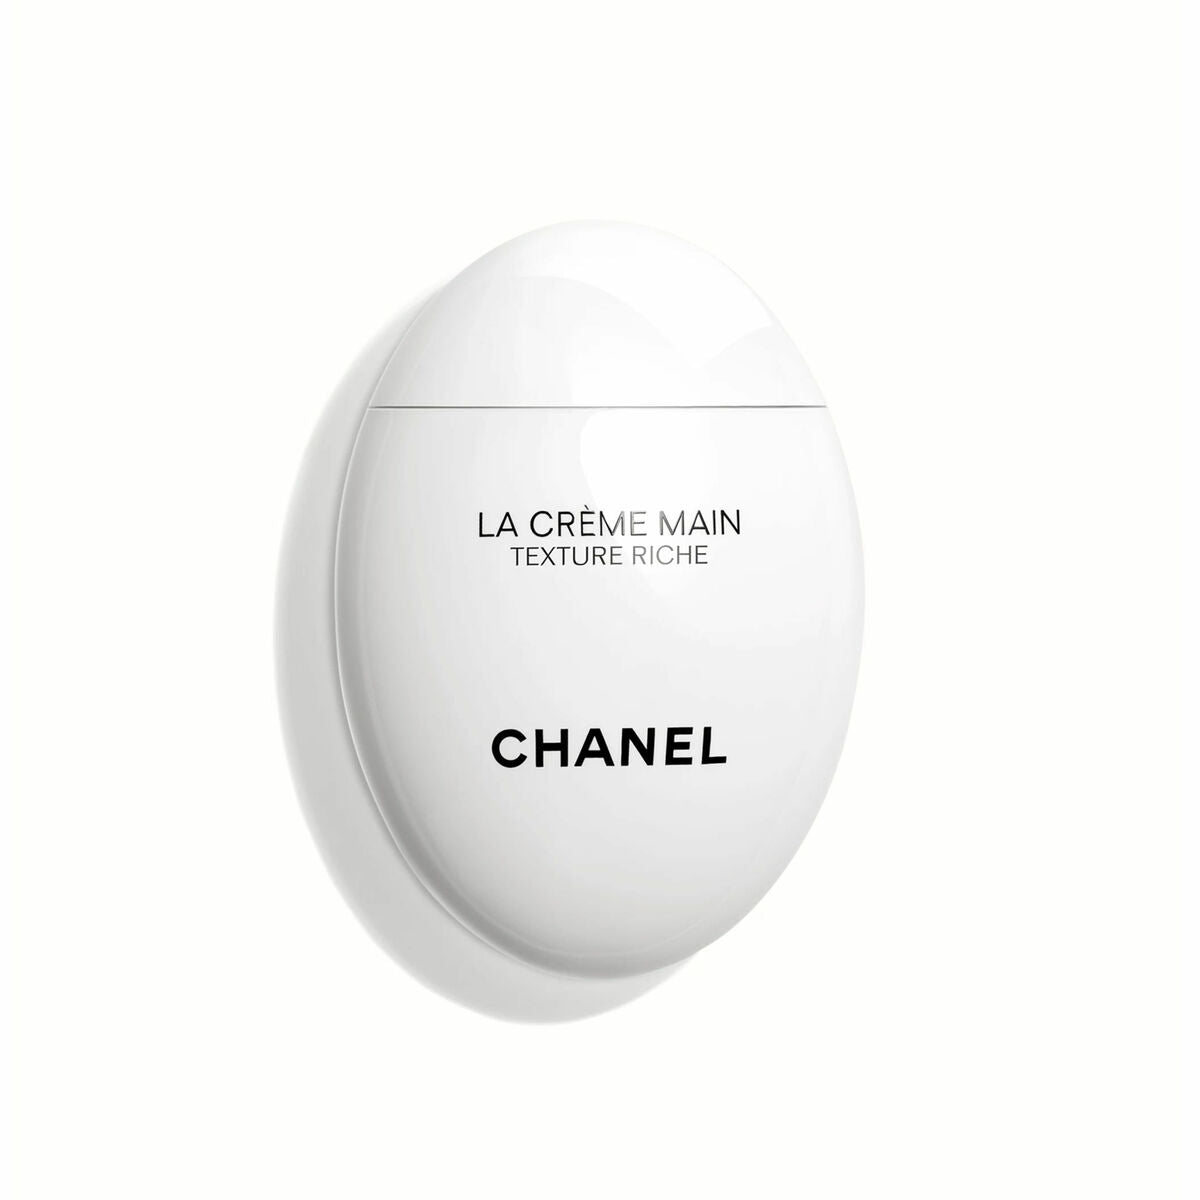 Kaufe Handcreme Chanel LA CRÈME MAIN Texture Riche 50 ml bei AWK Flagship um € 75.00